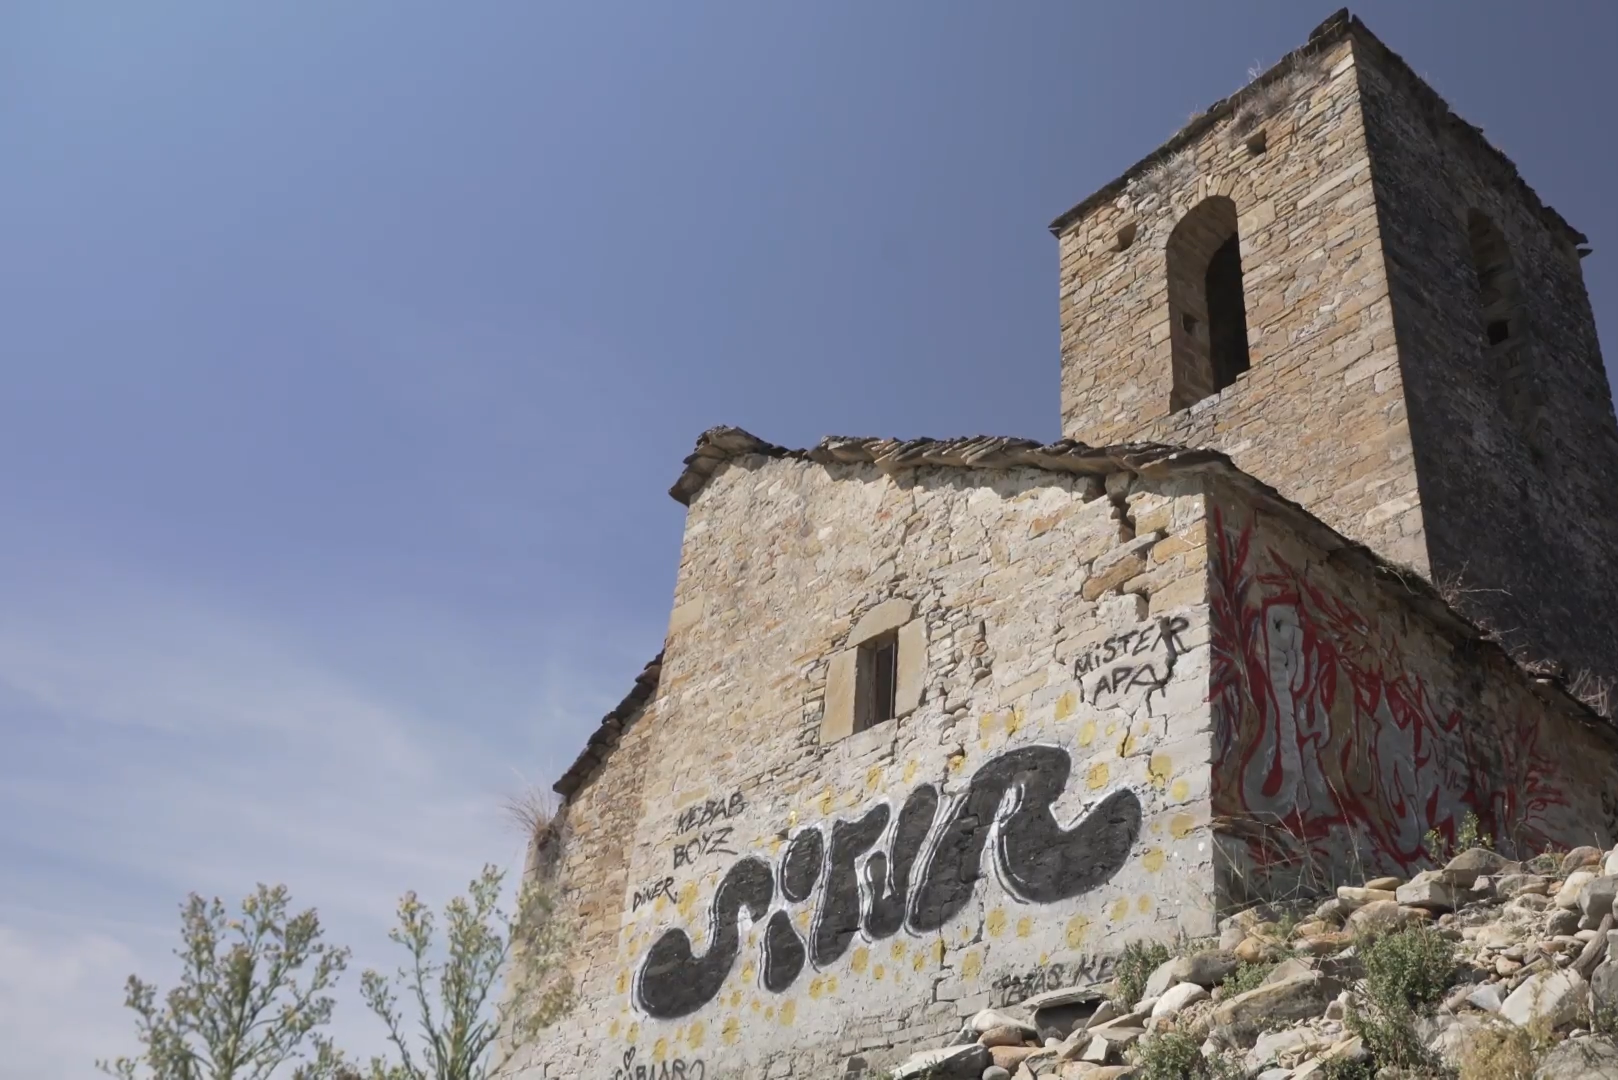 Residenti del comune spagnolo indignati dopo che i turisti hanno deturpato con graffiti una chiesa secolare: “Questa non è arte, questo è un crimine”